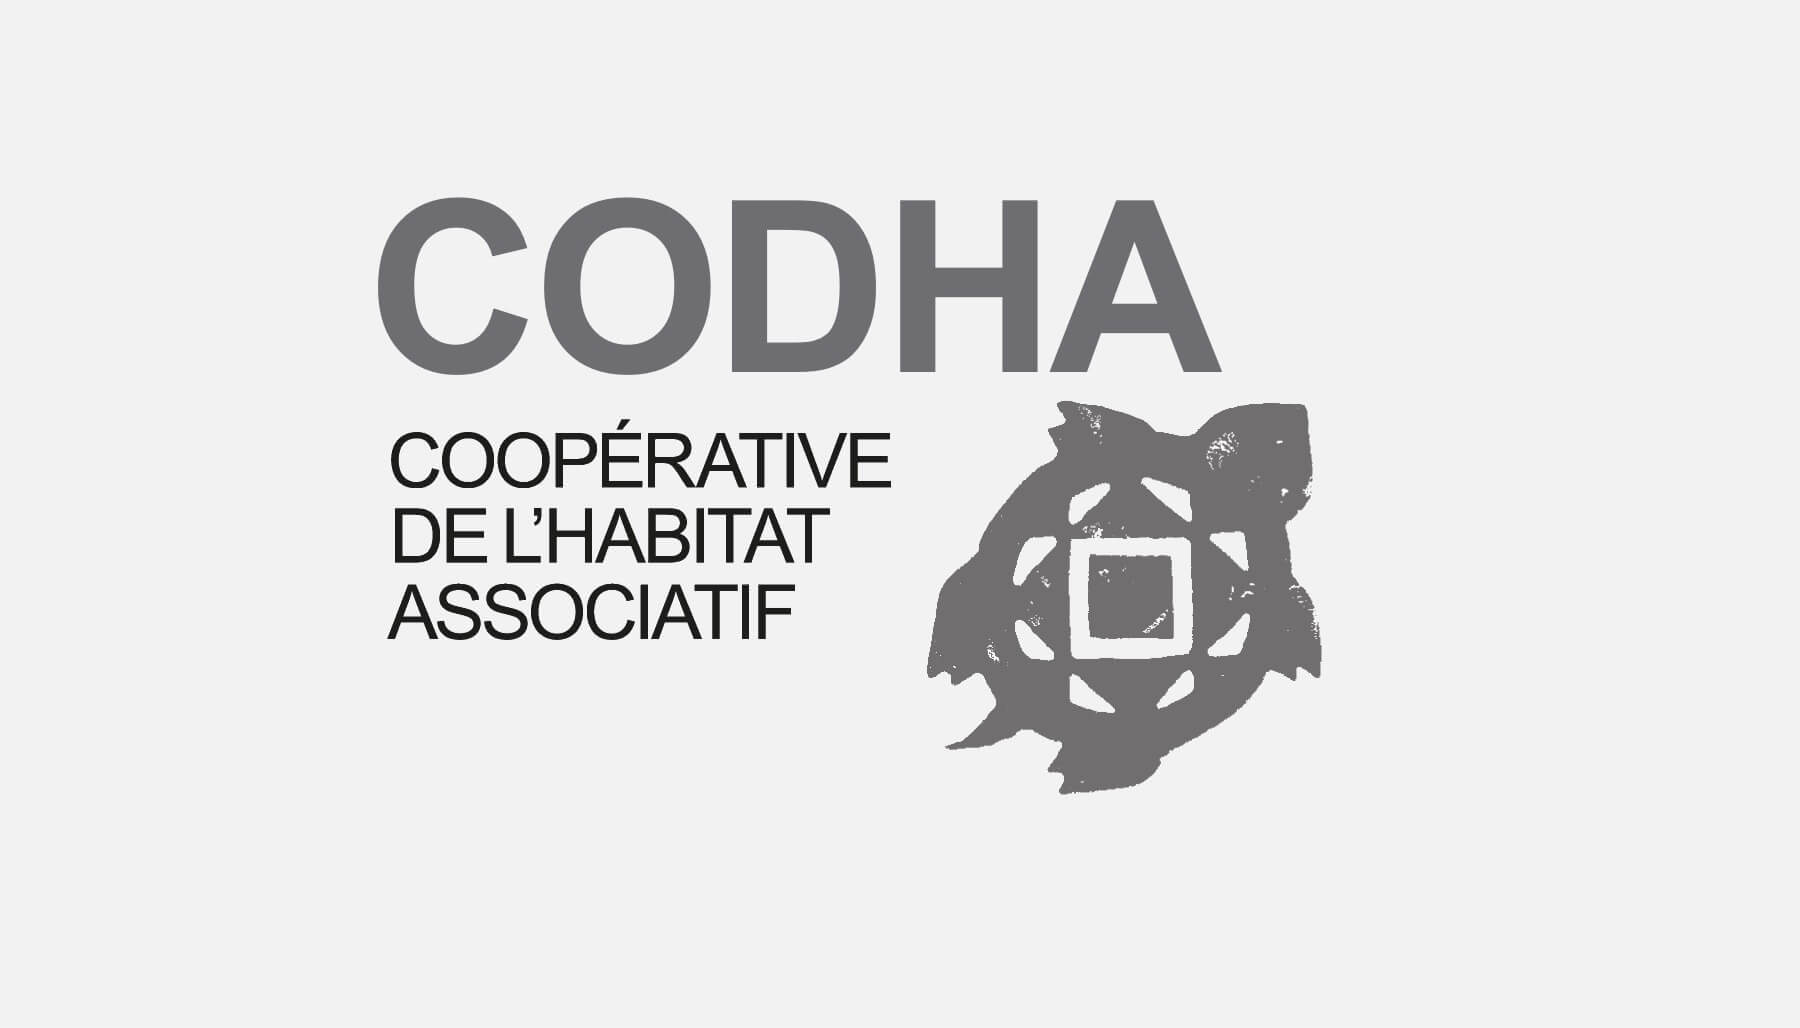 CODHA Coopérative de l'habitat associatif